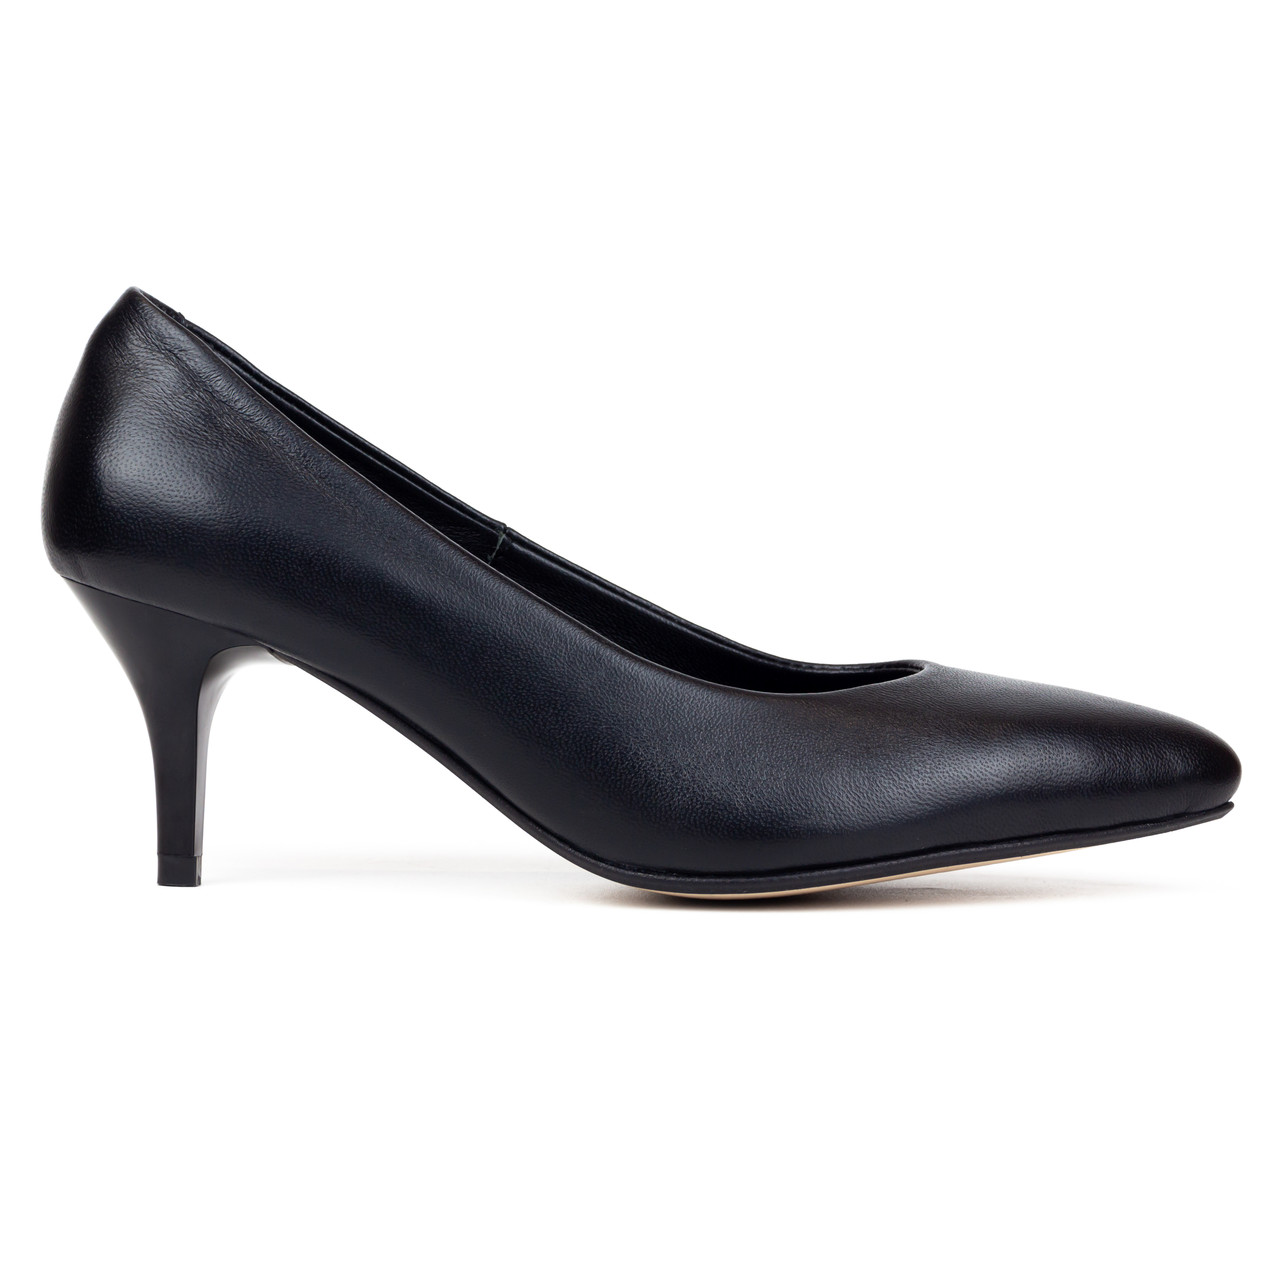 Класичні туфлі шкіряні 38-й  розмір Woman's heel чорні з загостреним носком на шпильці, фото 1